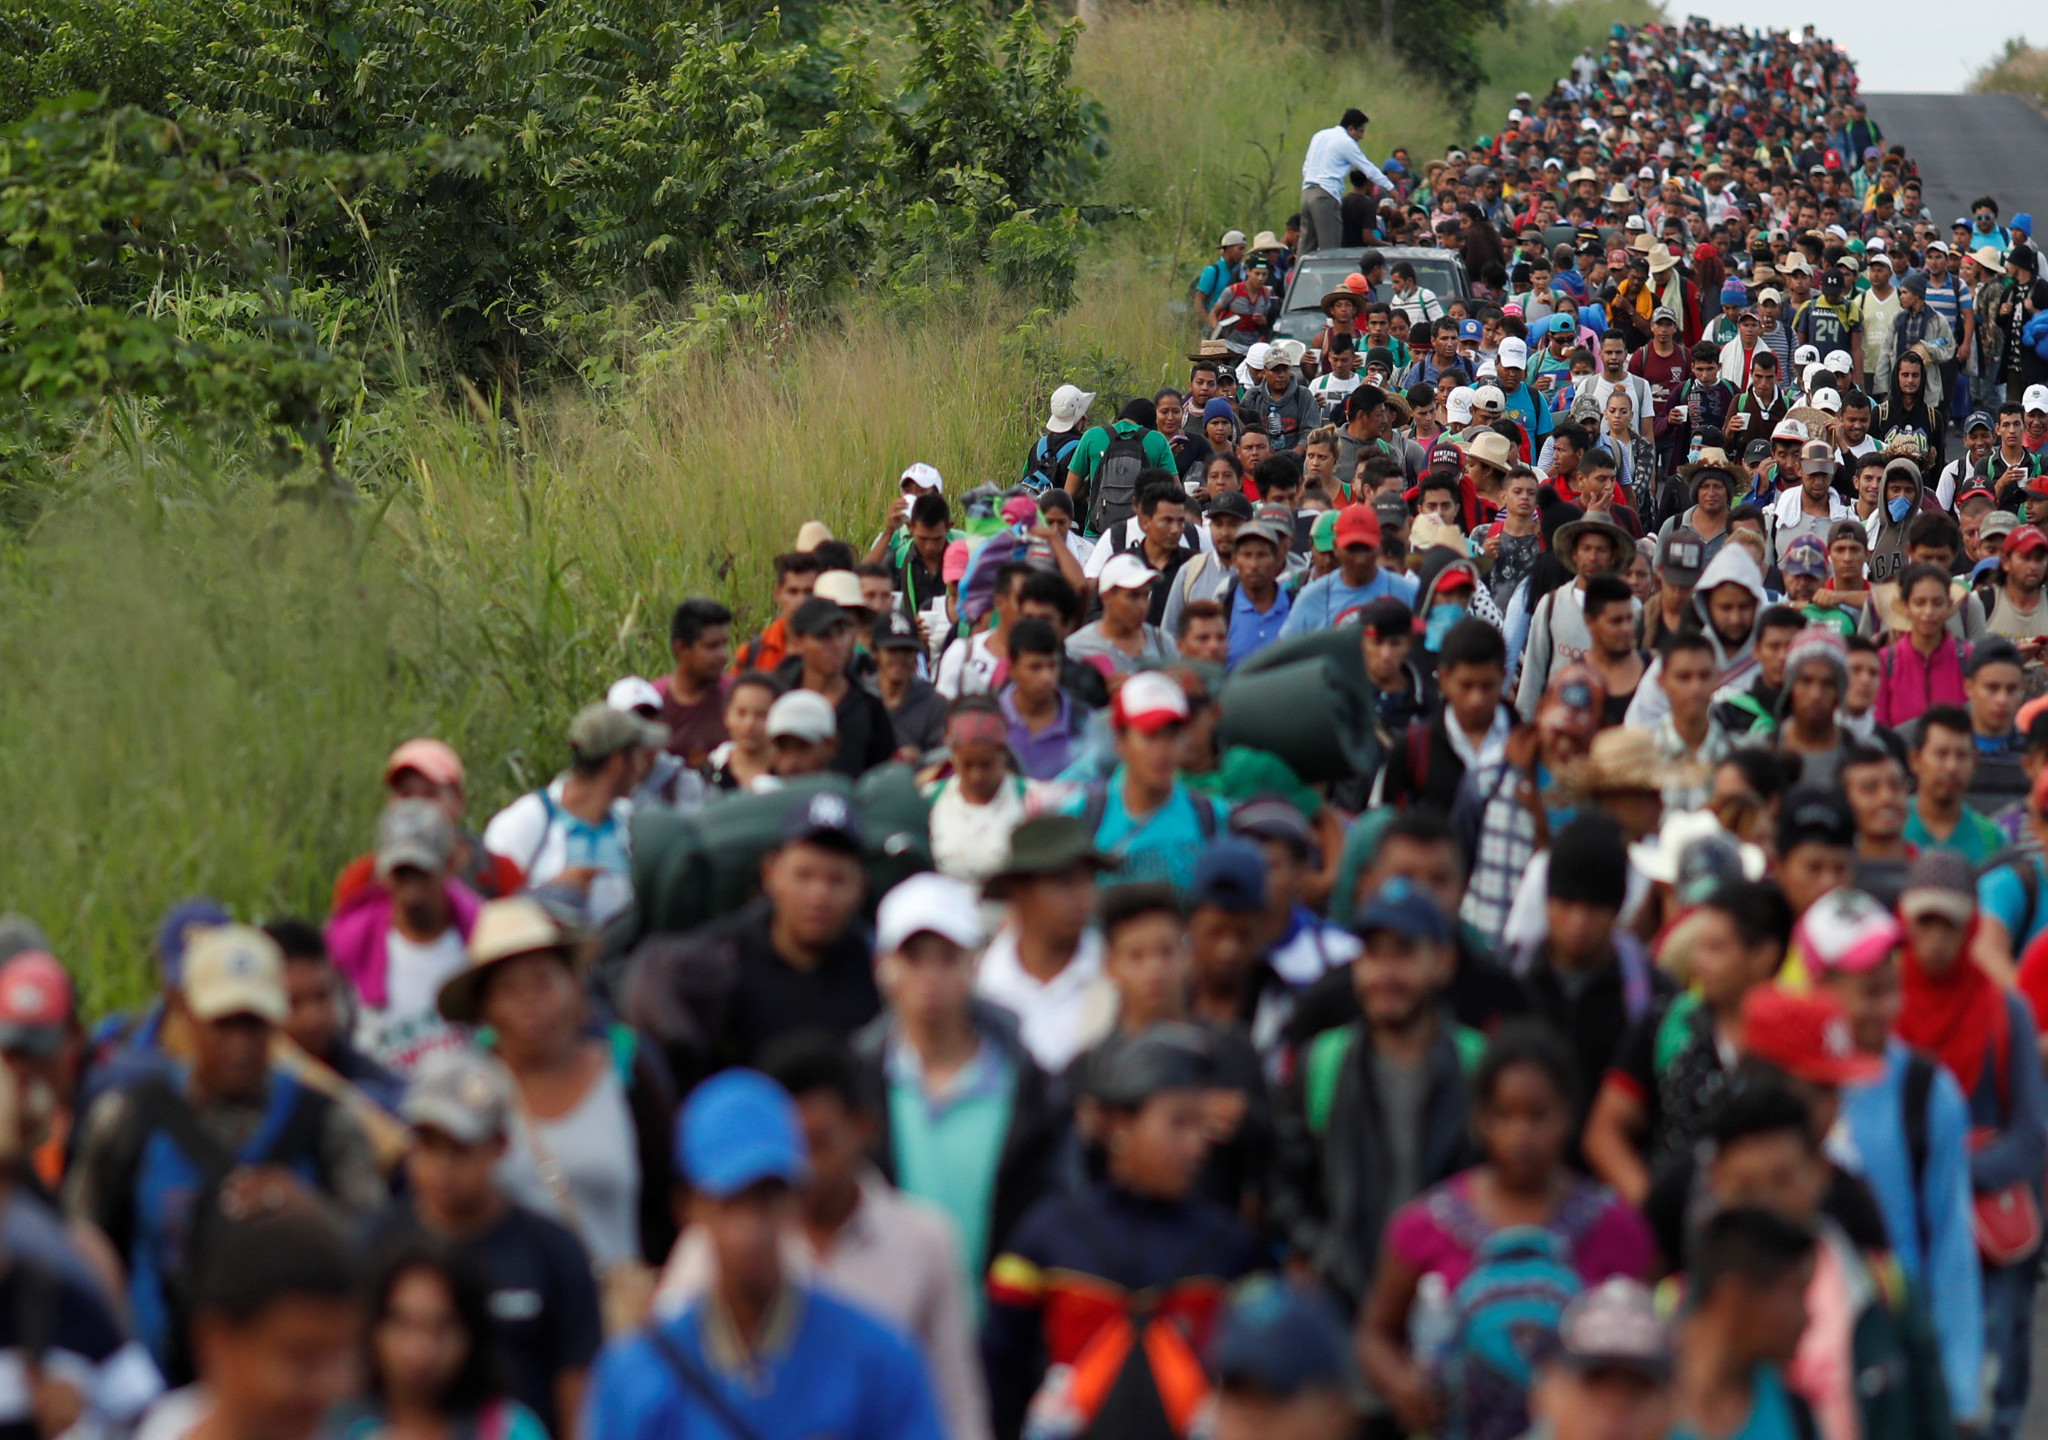 Los inmigrantes llegan por miles atravesando México